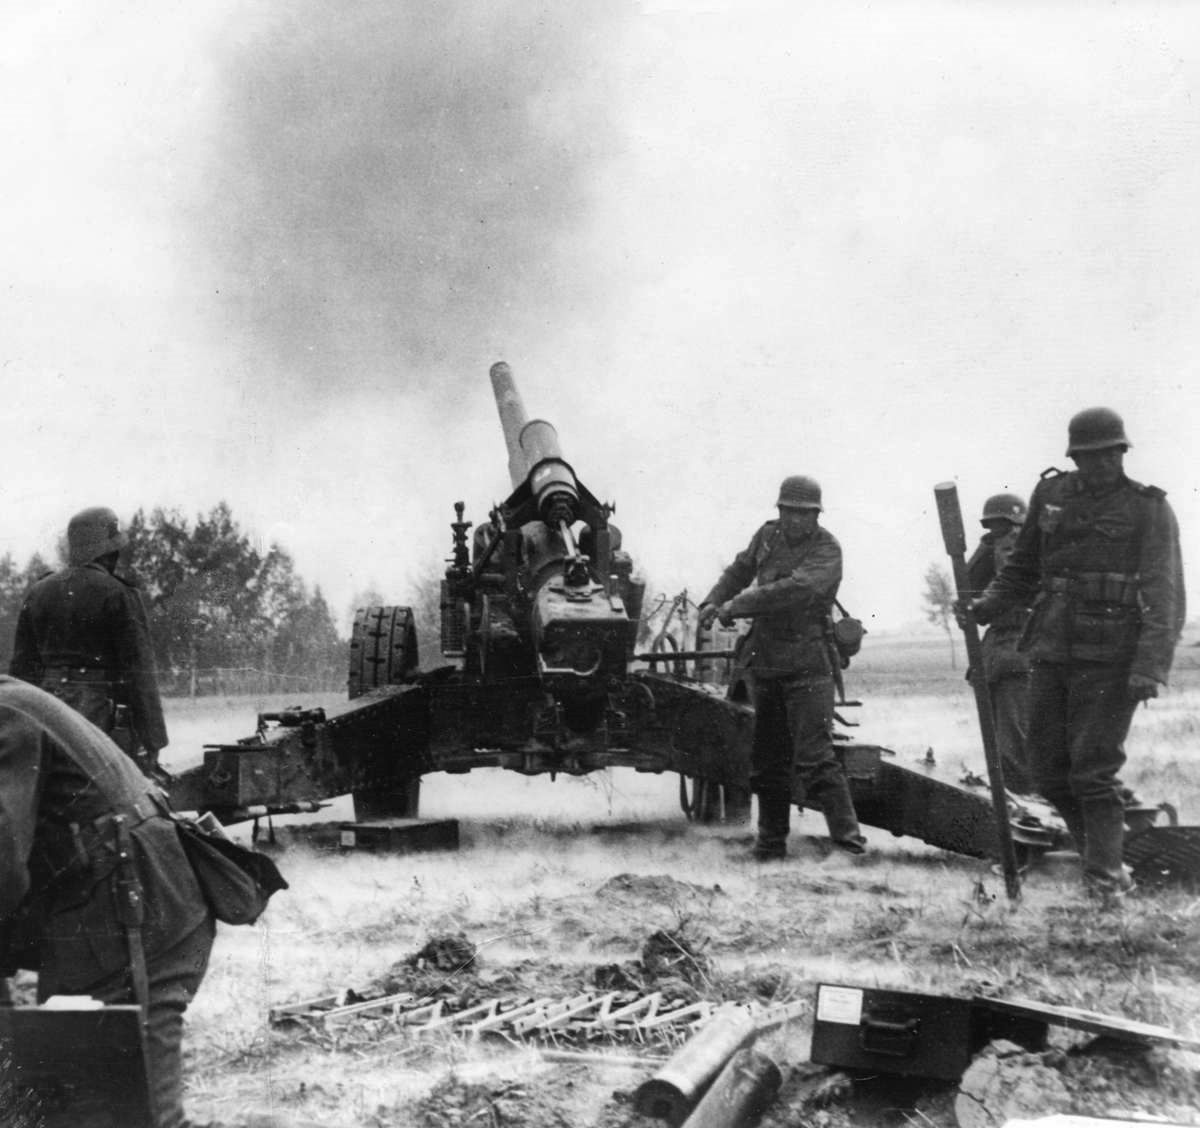 15 Cm SFH 18 артиллерия Германии периода второй мировой войны